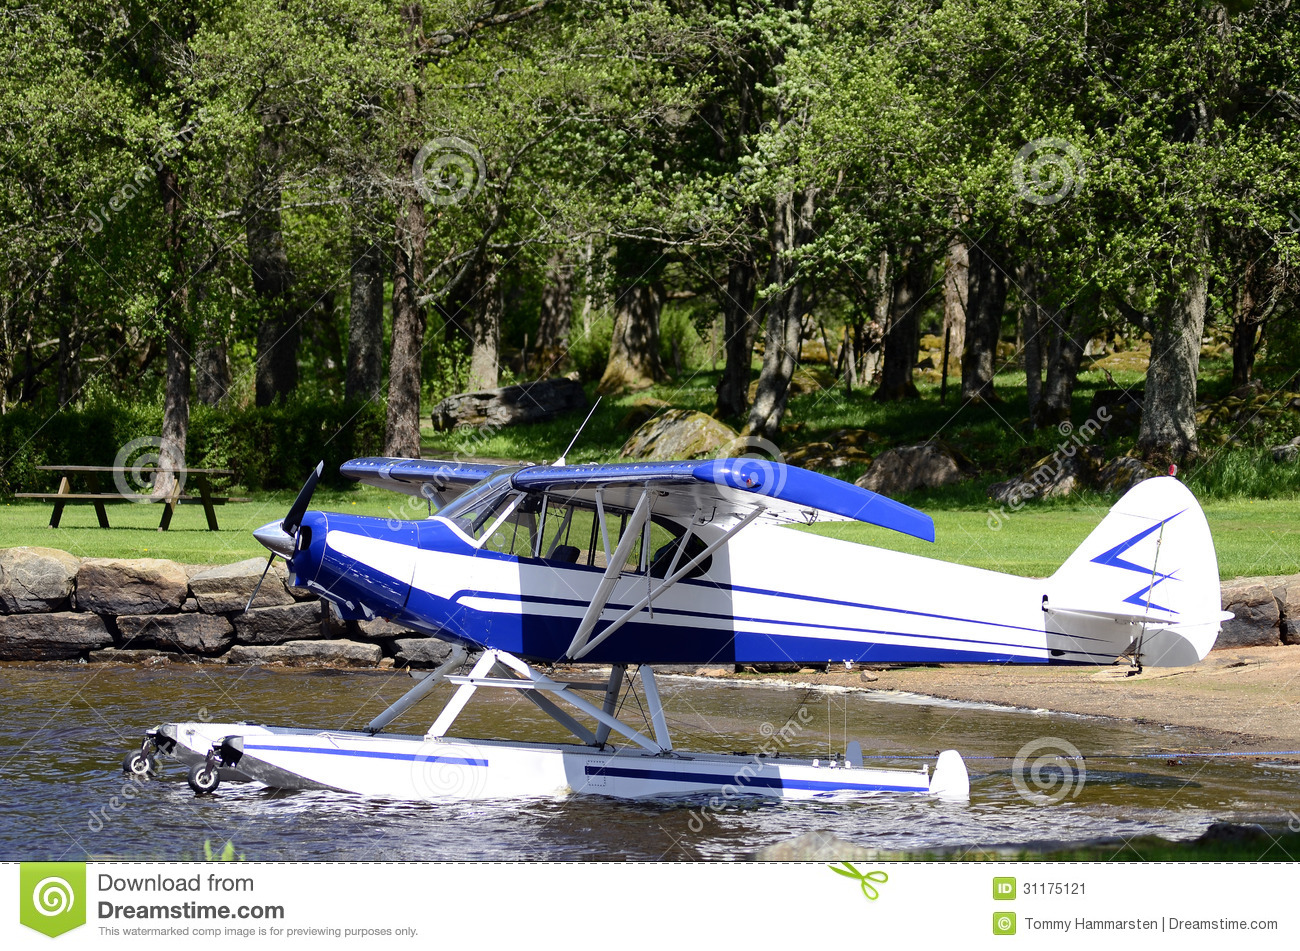 Aircraft Seaplane Floating Stock Image   Image  31175121